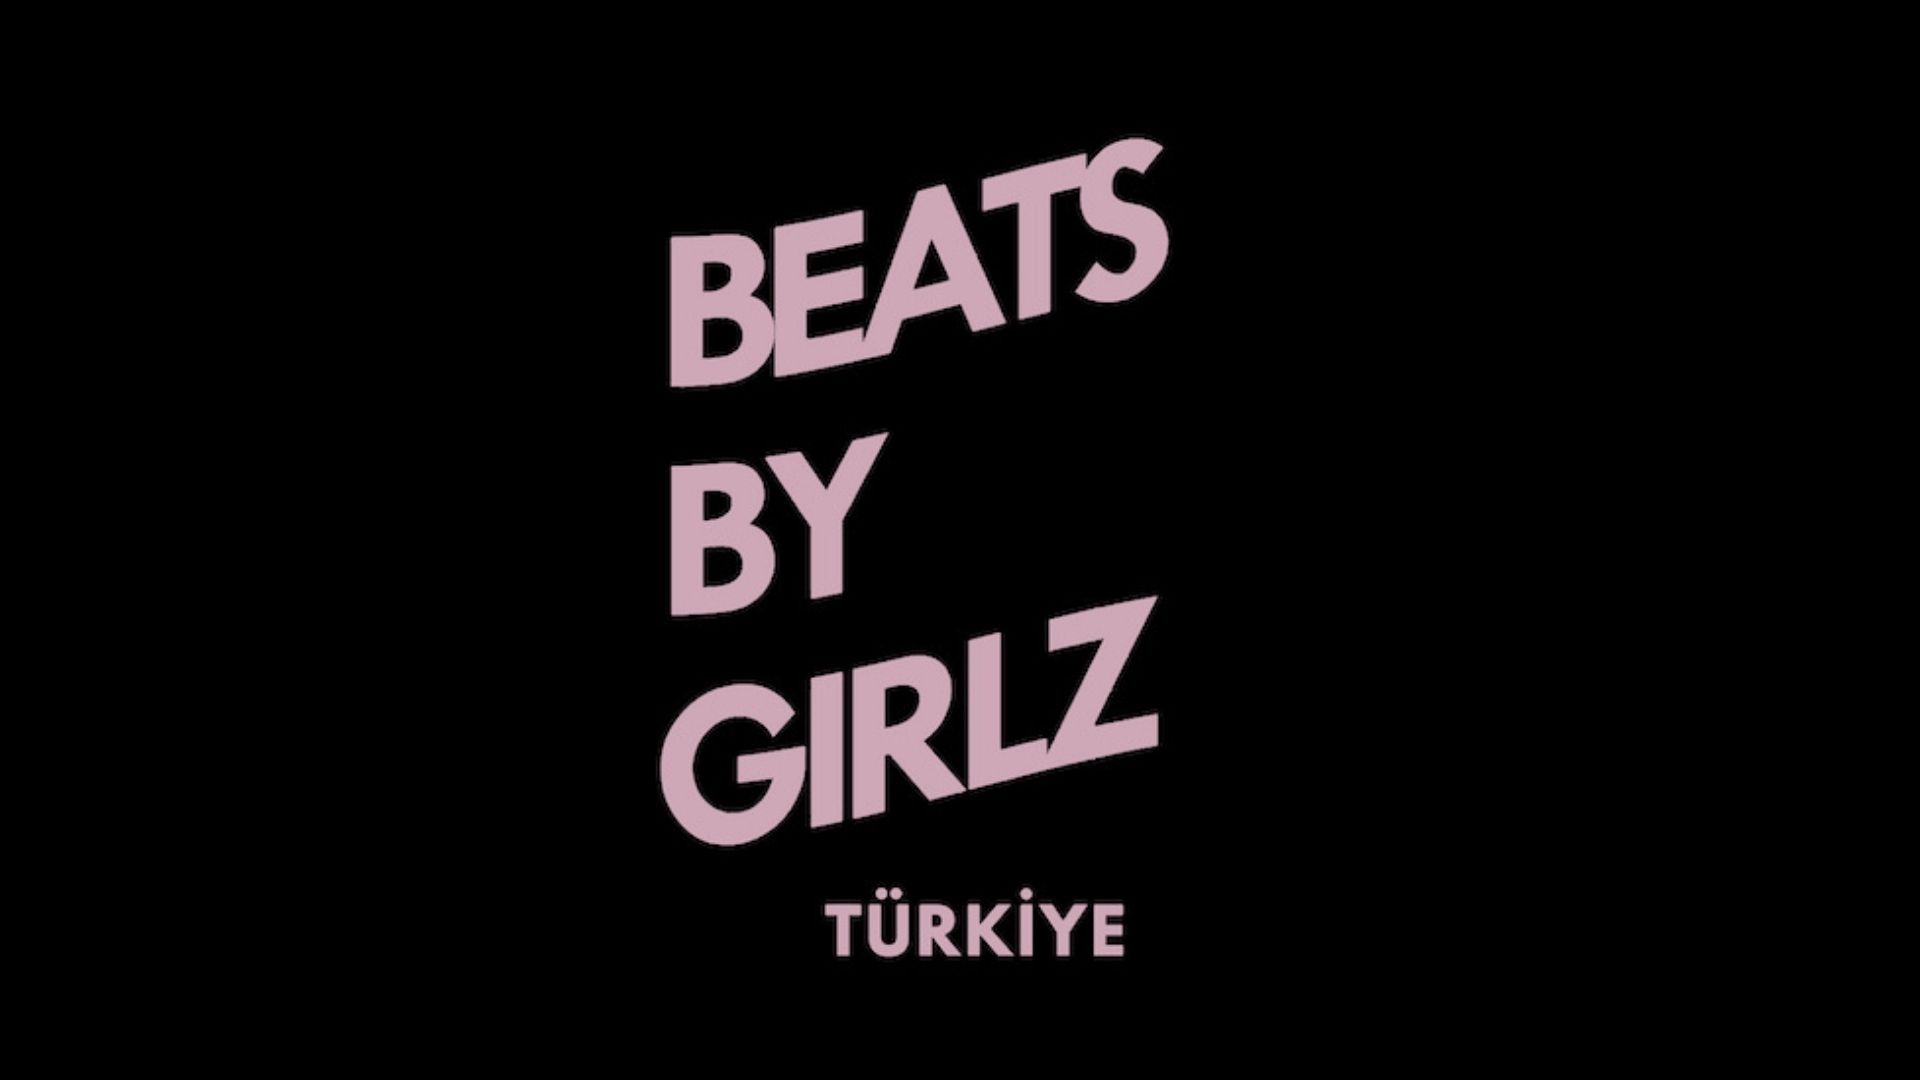 Beats by Girlz Türkiye lansmana çağırıyor | Kaos GL - LGBTİ+ Haber Portalı